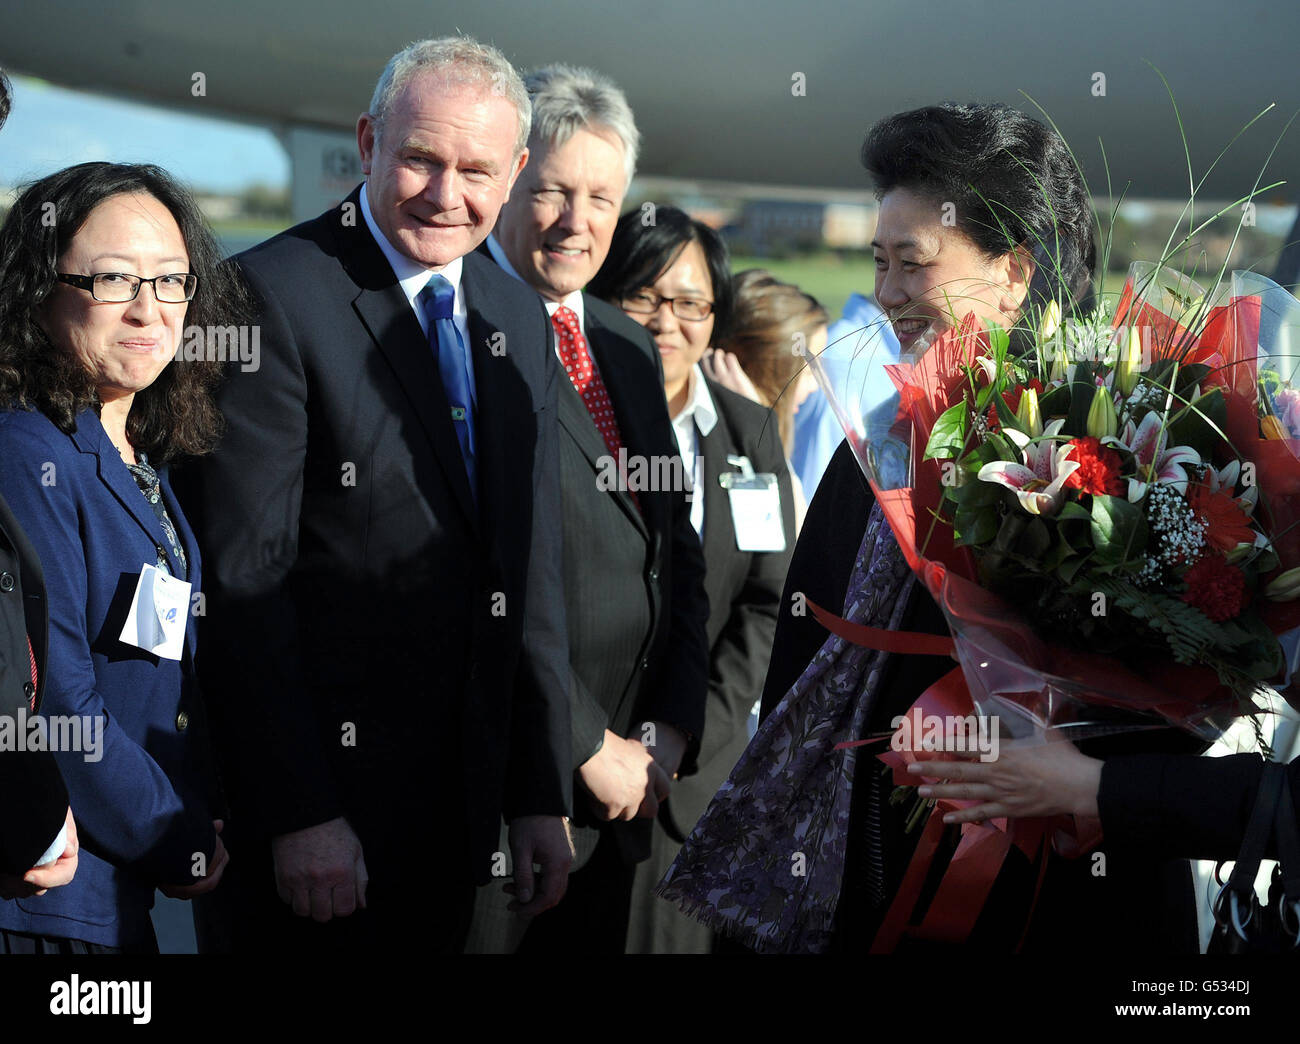 Liu Yandong (rechts), die ranghöchste Politikerin in Chinas kommunistischer Partei, kommt am internationalen Flughafen von Belfast an, um Nordirland zu besuchen, während der erste Minister Peter Robinson (3. Links) und der stellvertretende erste Minister Martin McGuinness (2. Links) zusehen. Stockfoto